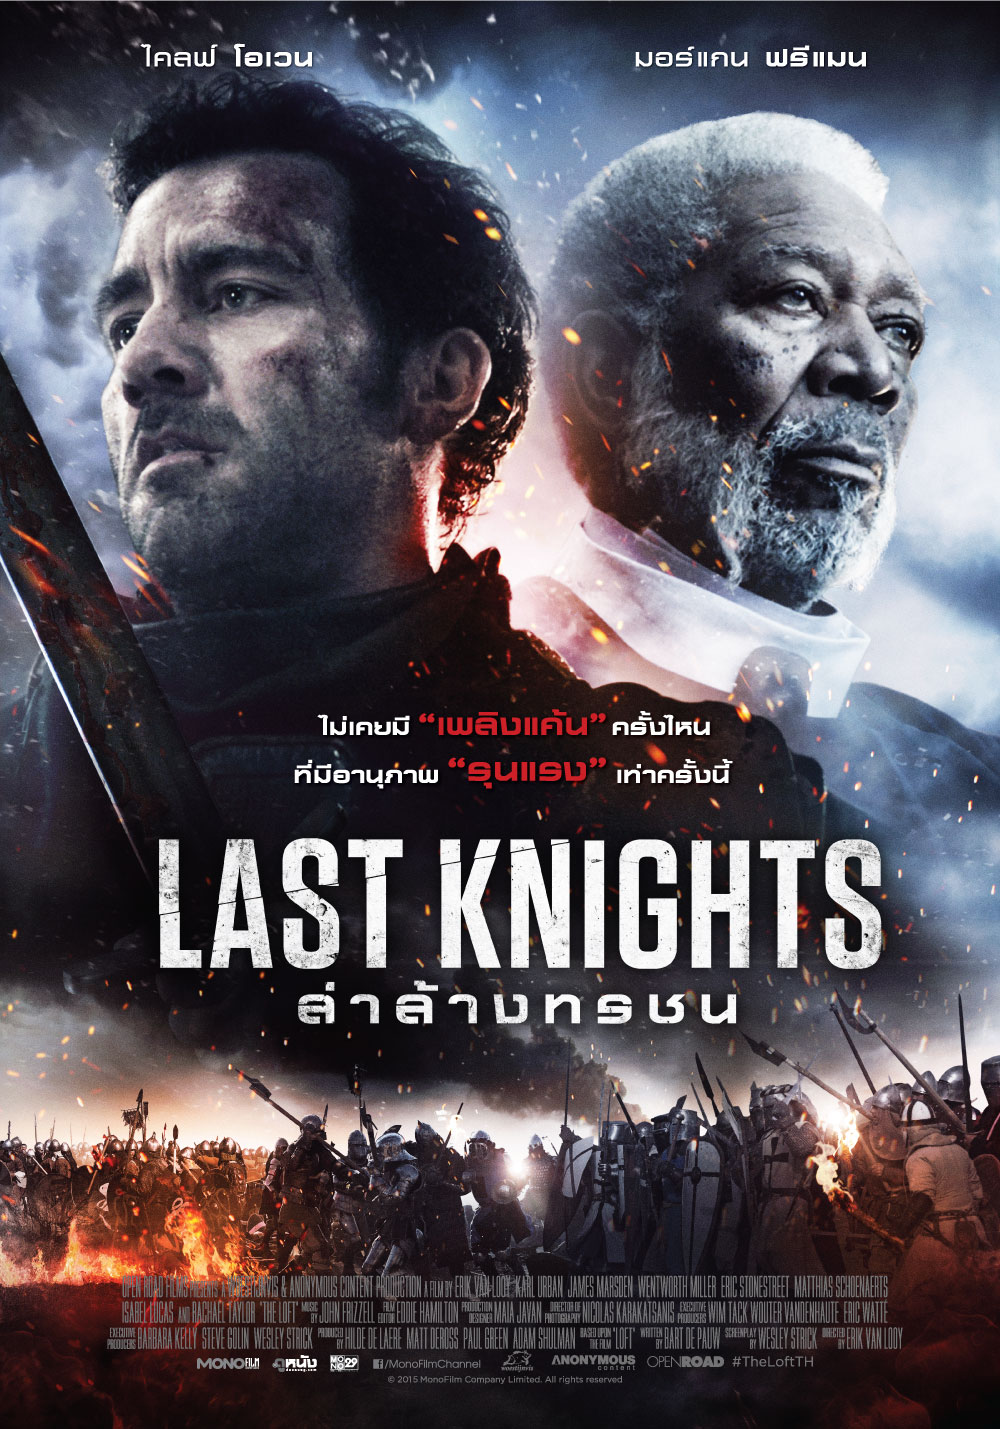 ดูหนังออนไลน์ Last Knights (2015) อัศวินคนสุดท้าย